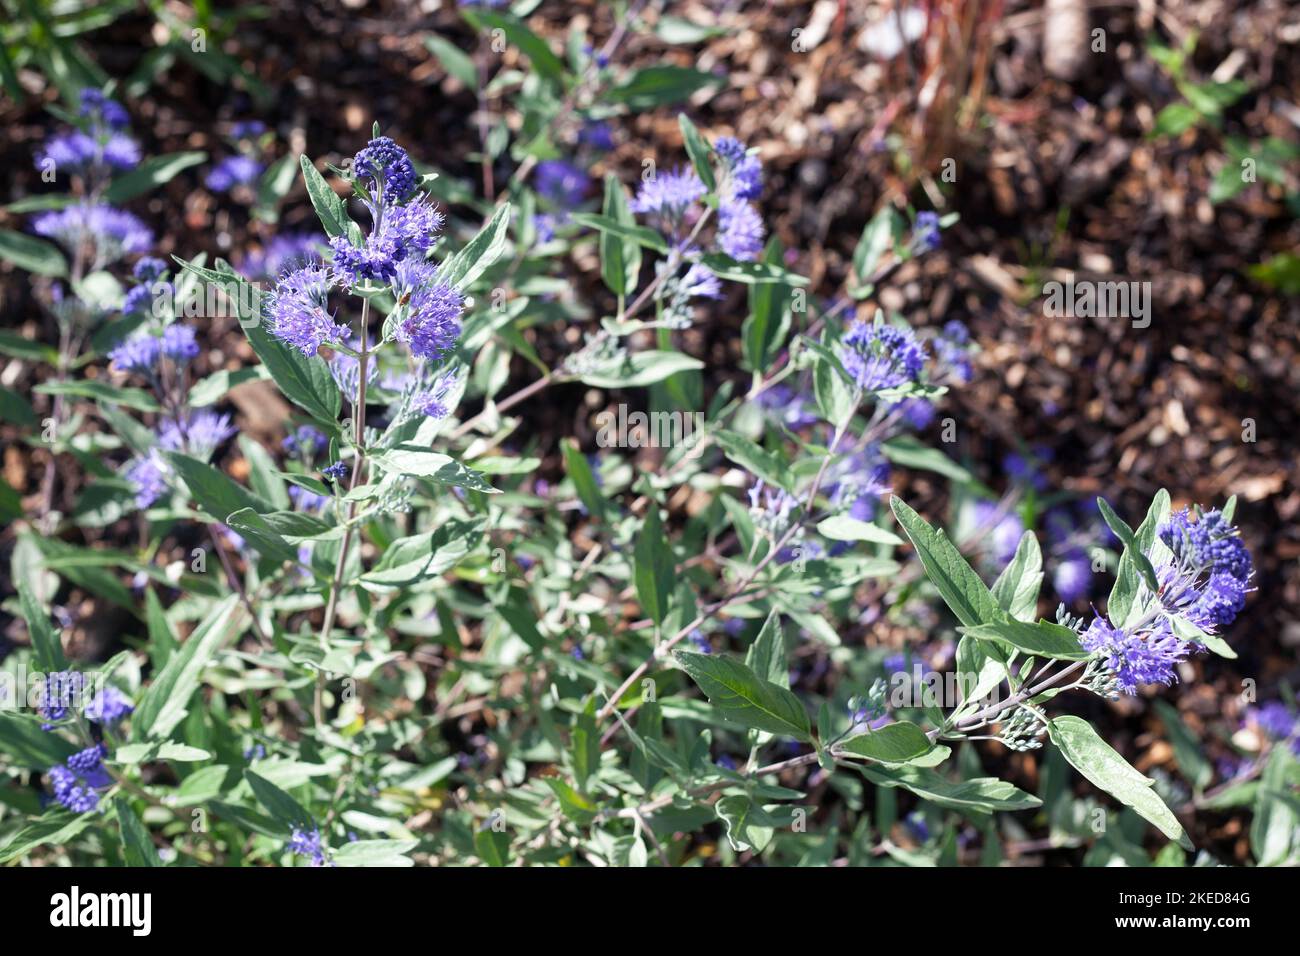 Plantes herbacées Caryopteris Dark Knight appelé Bluebeards arbuste avec fleurs bleues dans le jardin Banque D'Images